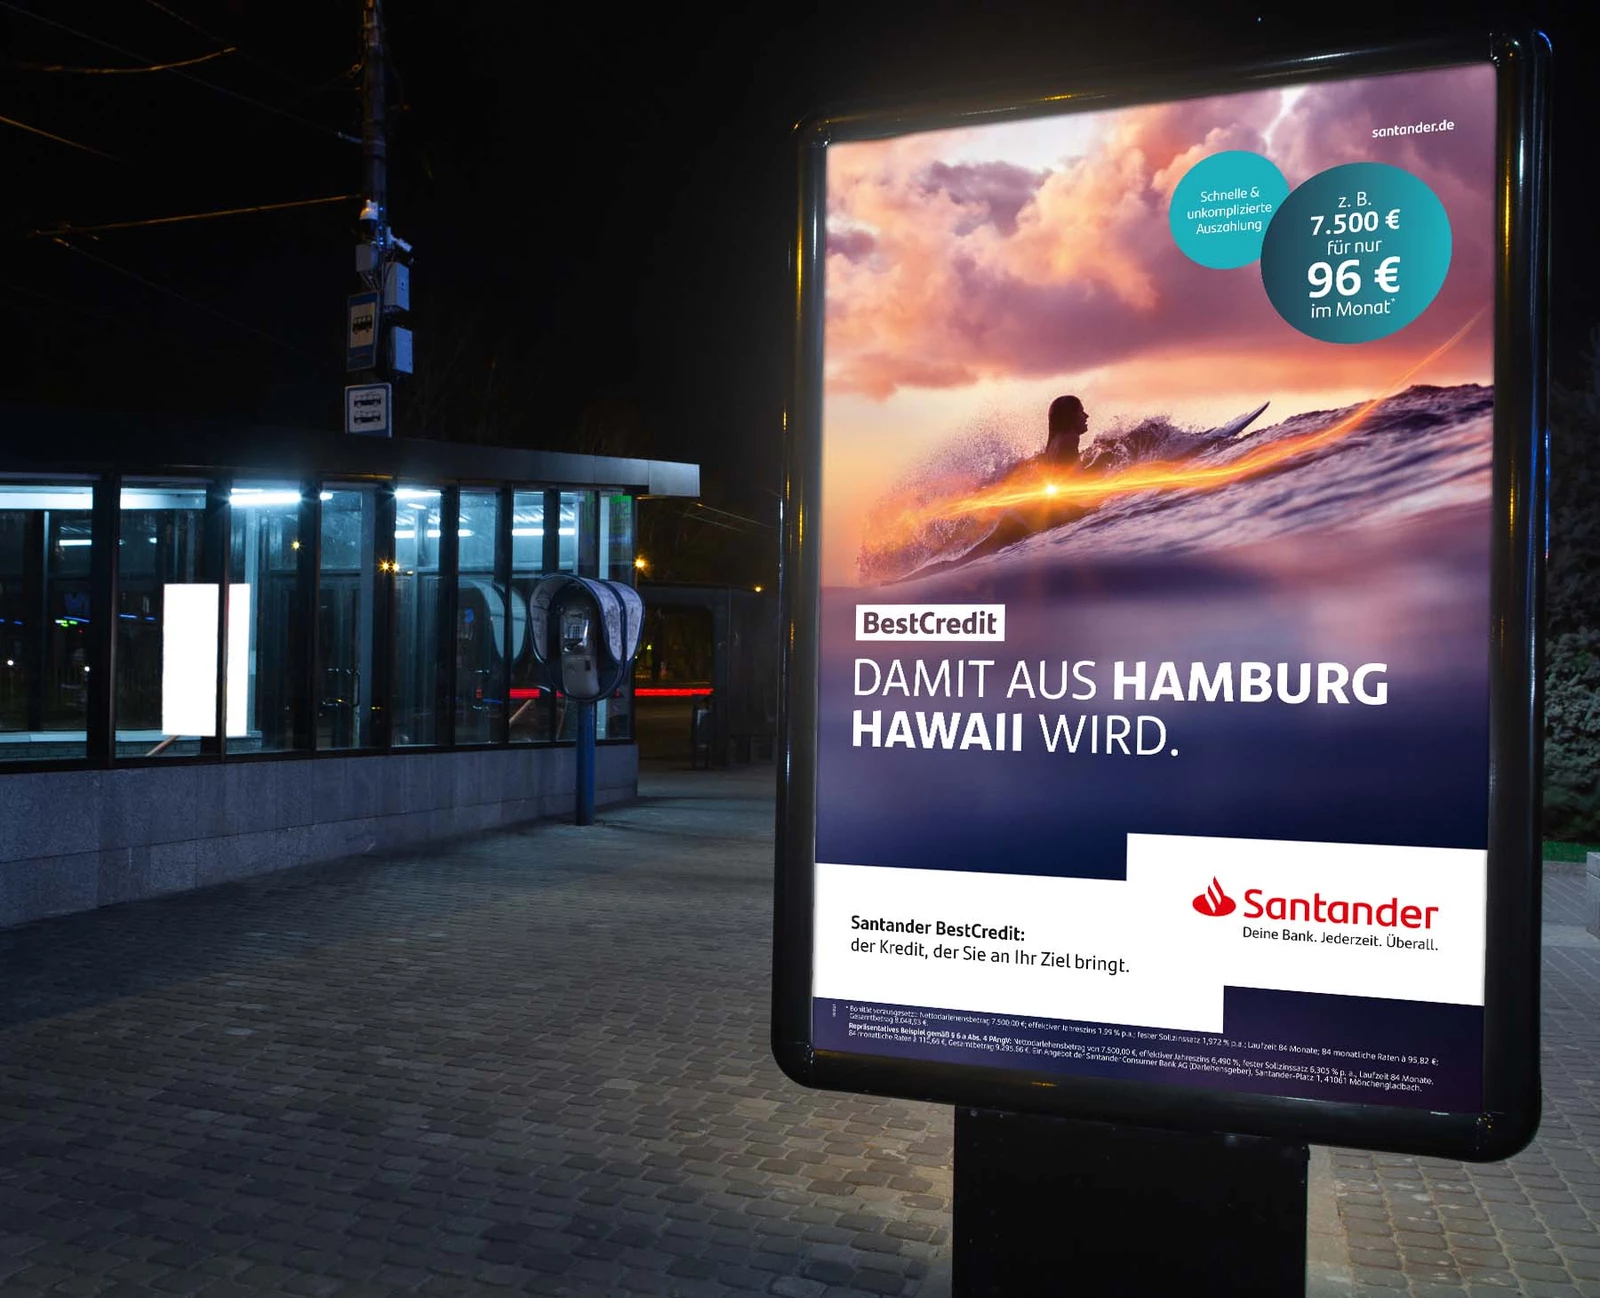 Santander Werbung auf einer kleinen Werbetafel im Dunkeln. 